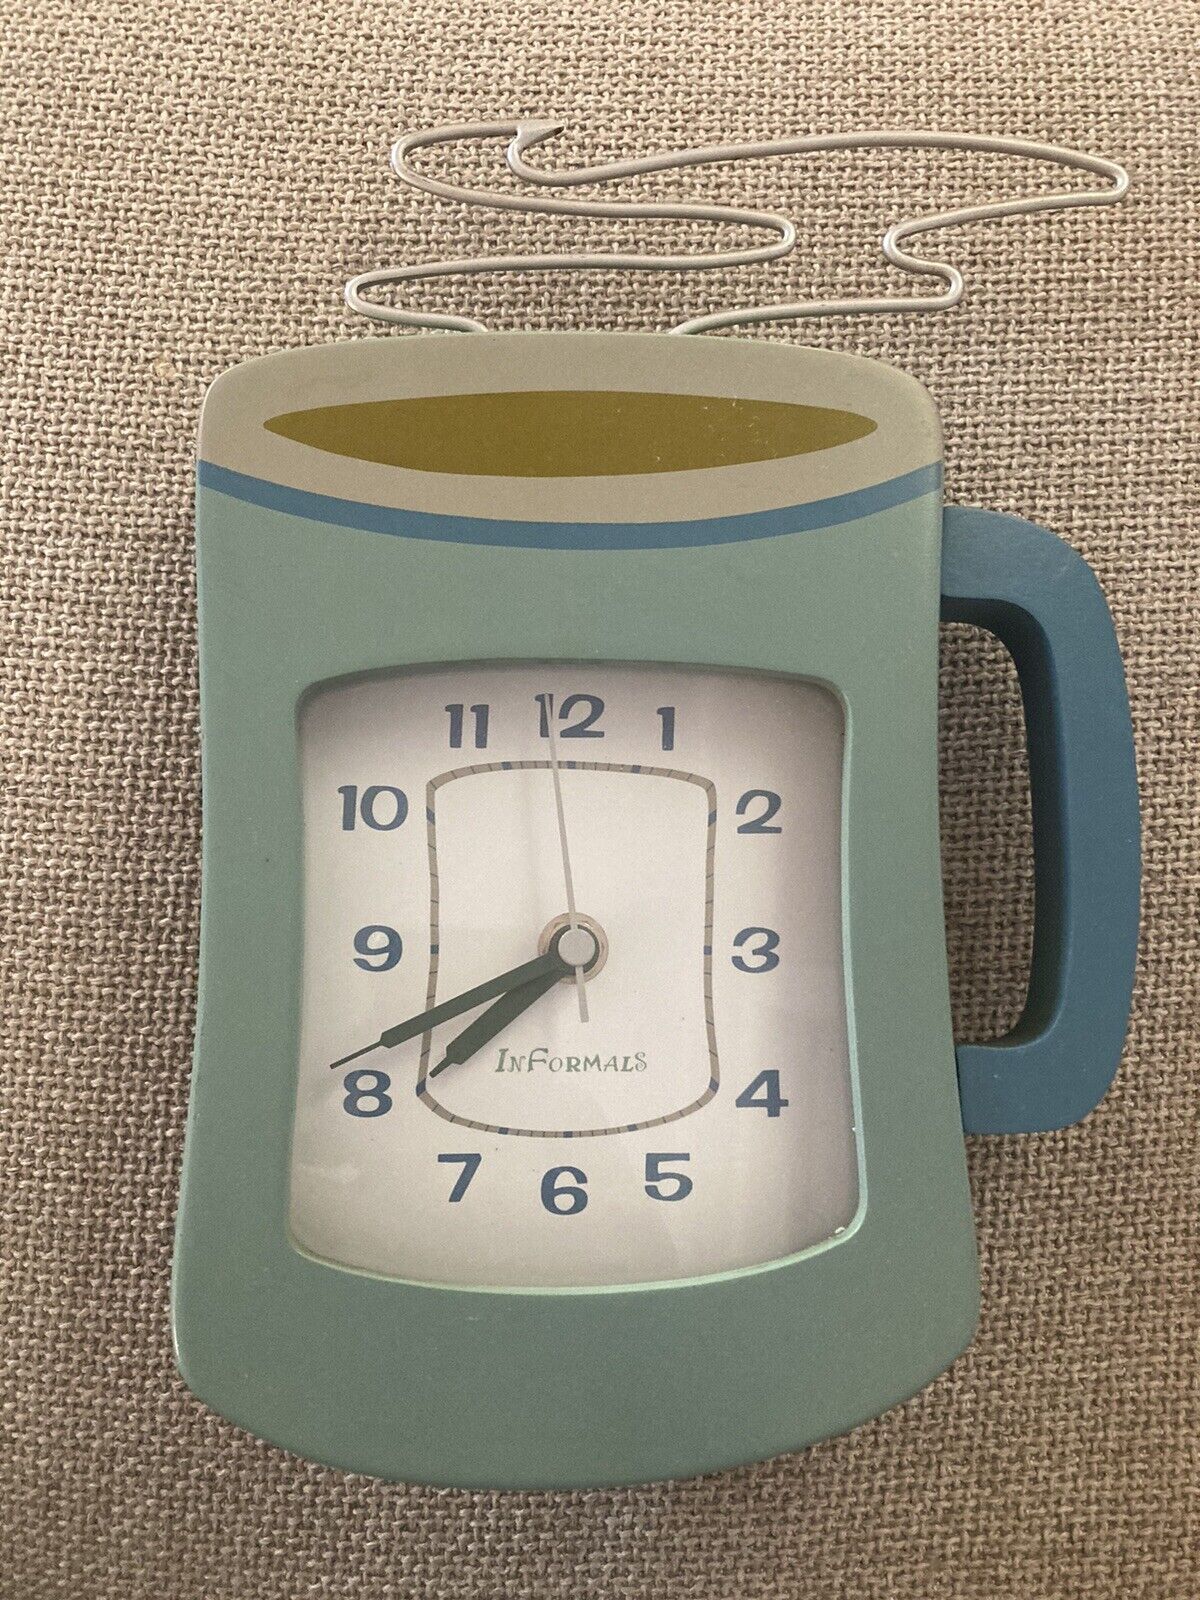 Vintage Informals Coffee Mug Kitchen Clock